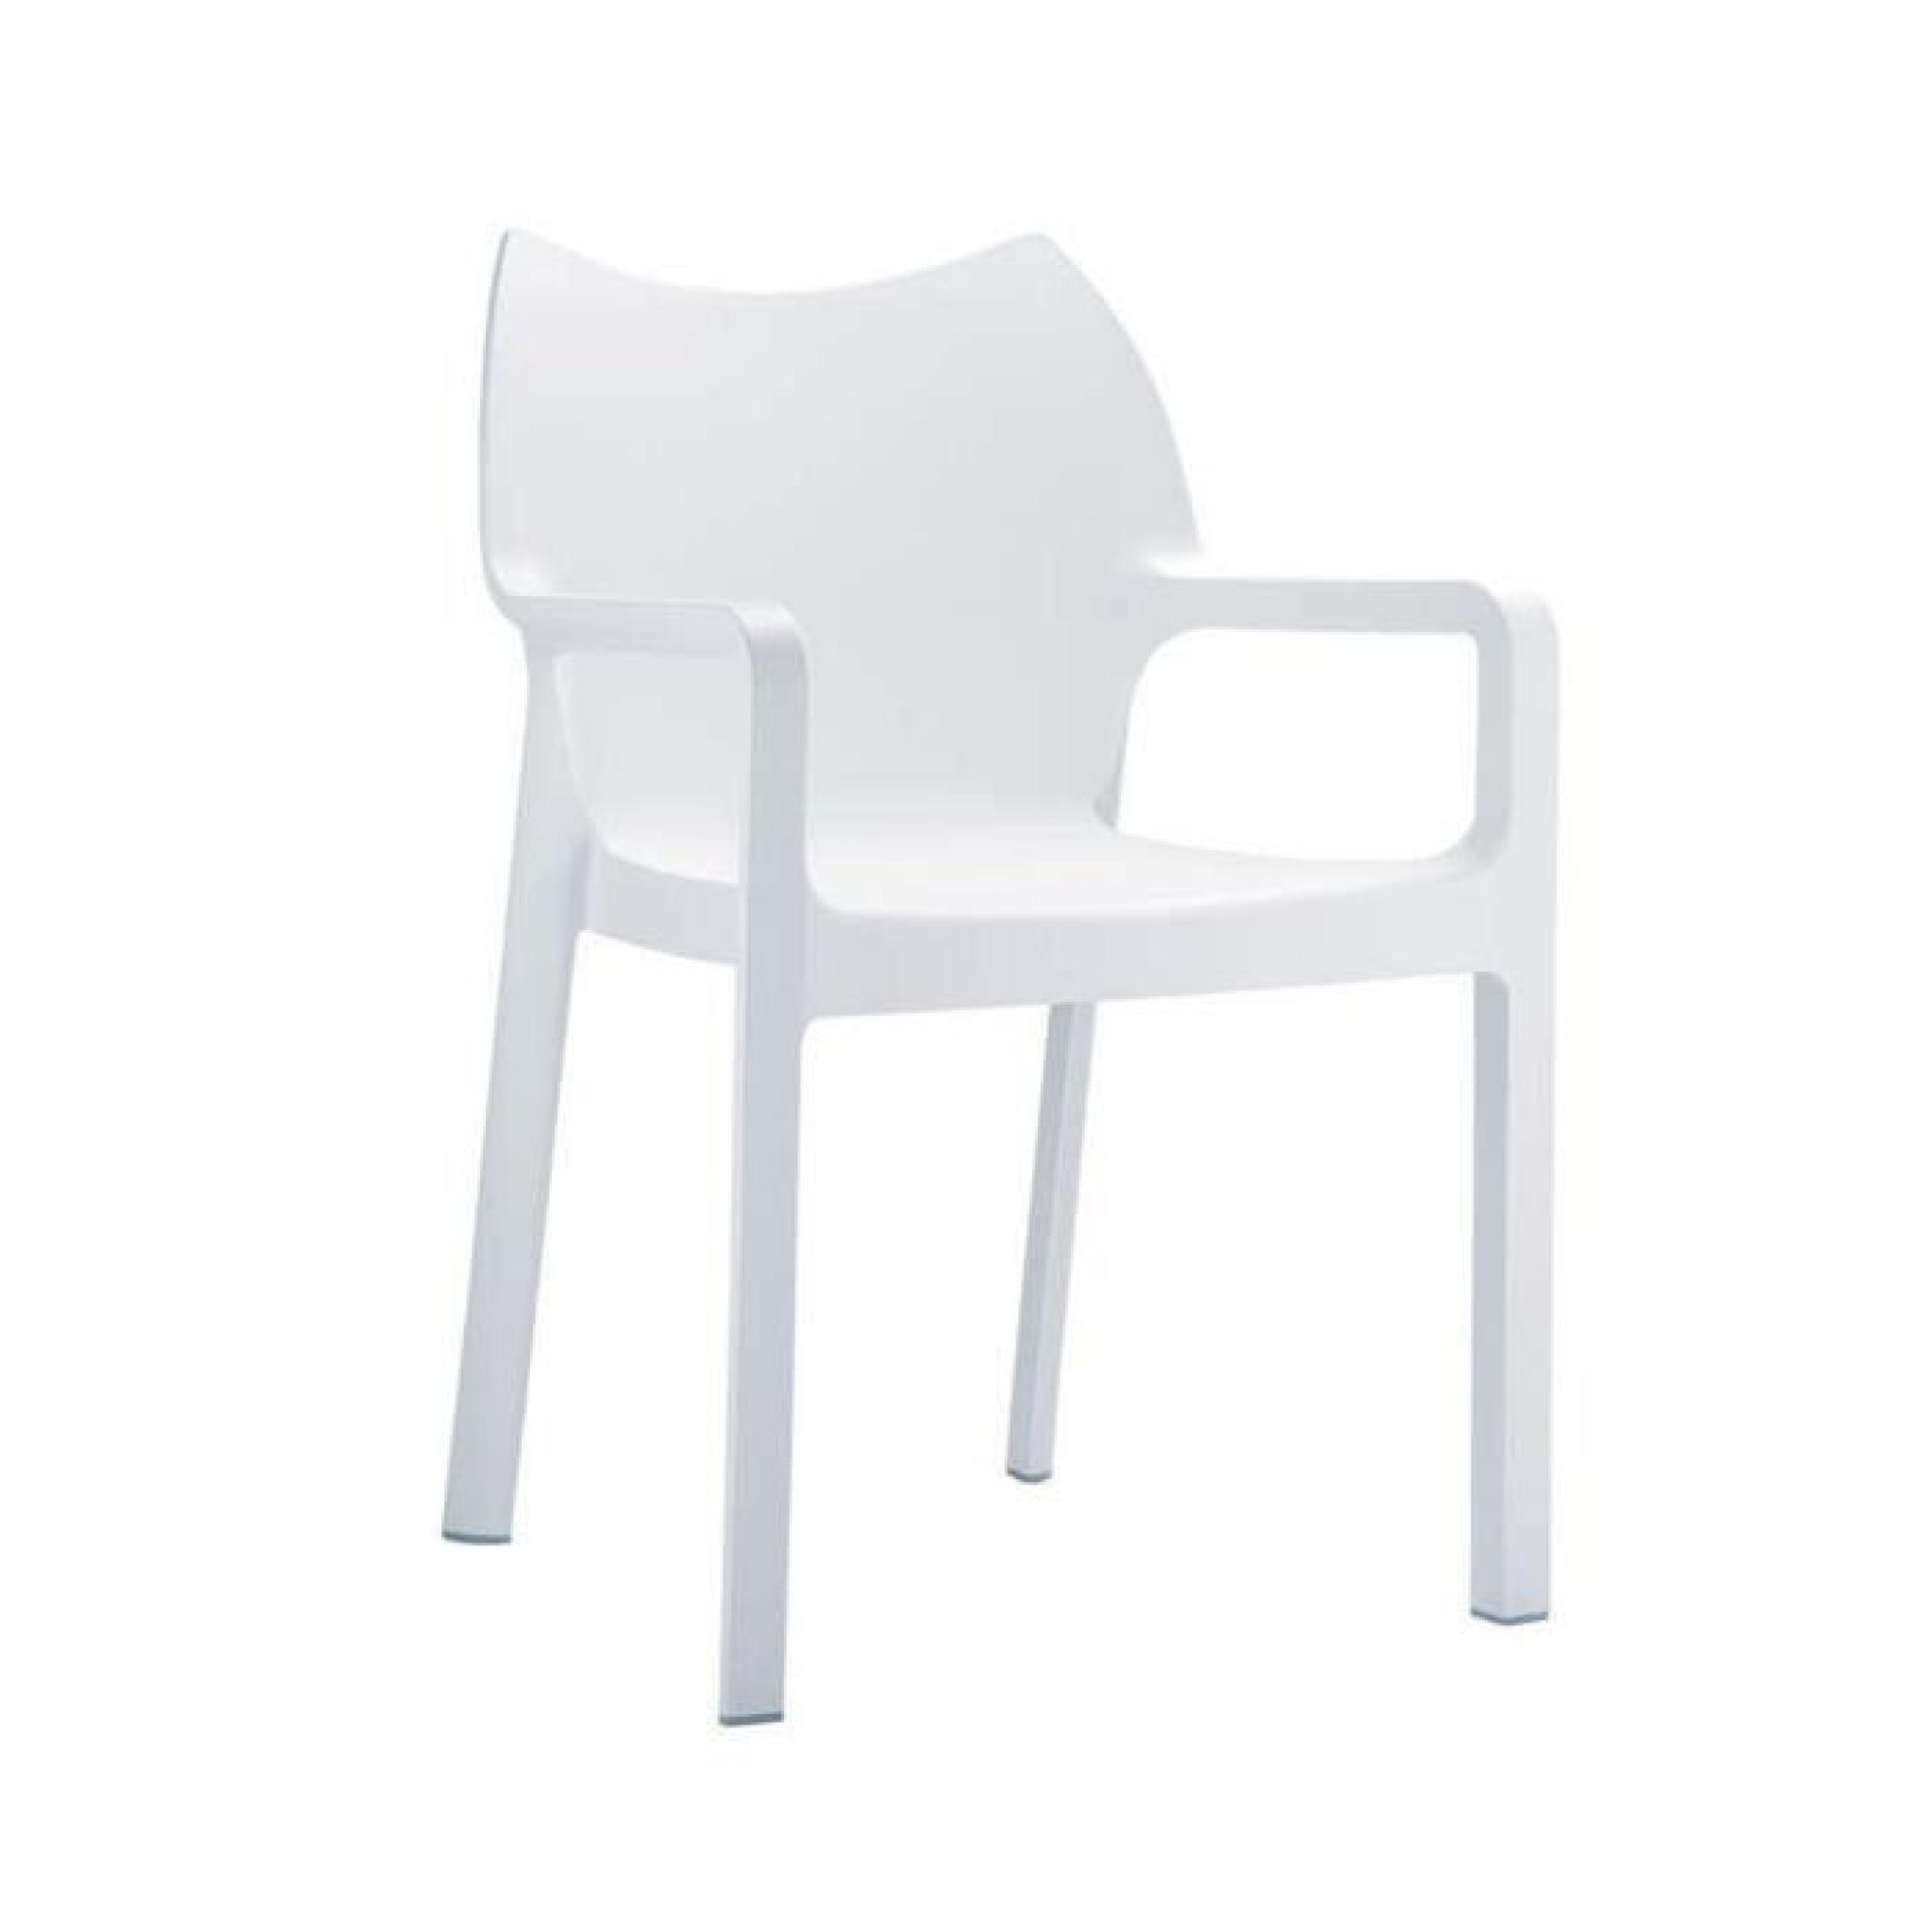 Chaise de jardin empilable en plastique blanc, Dim : H84 x P53 x L57 cm